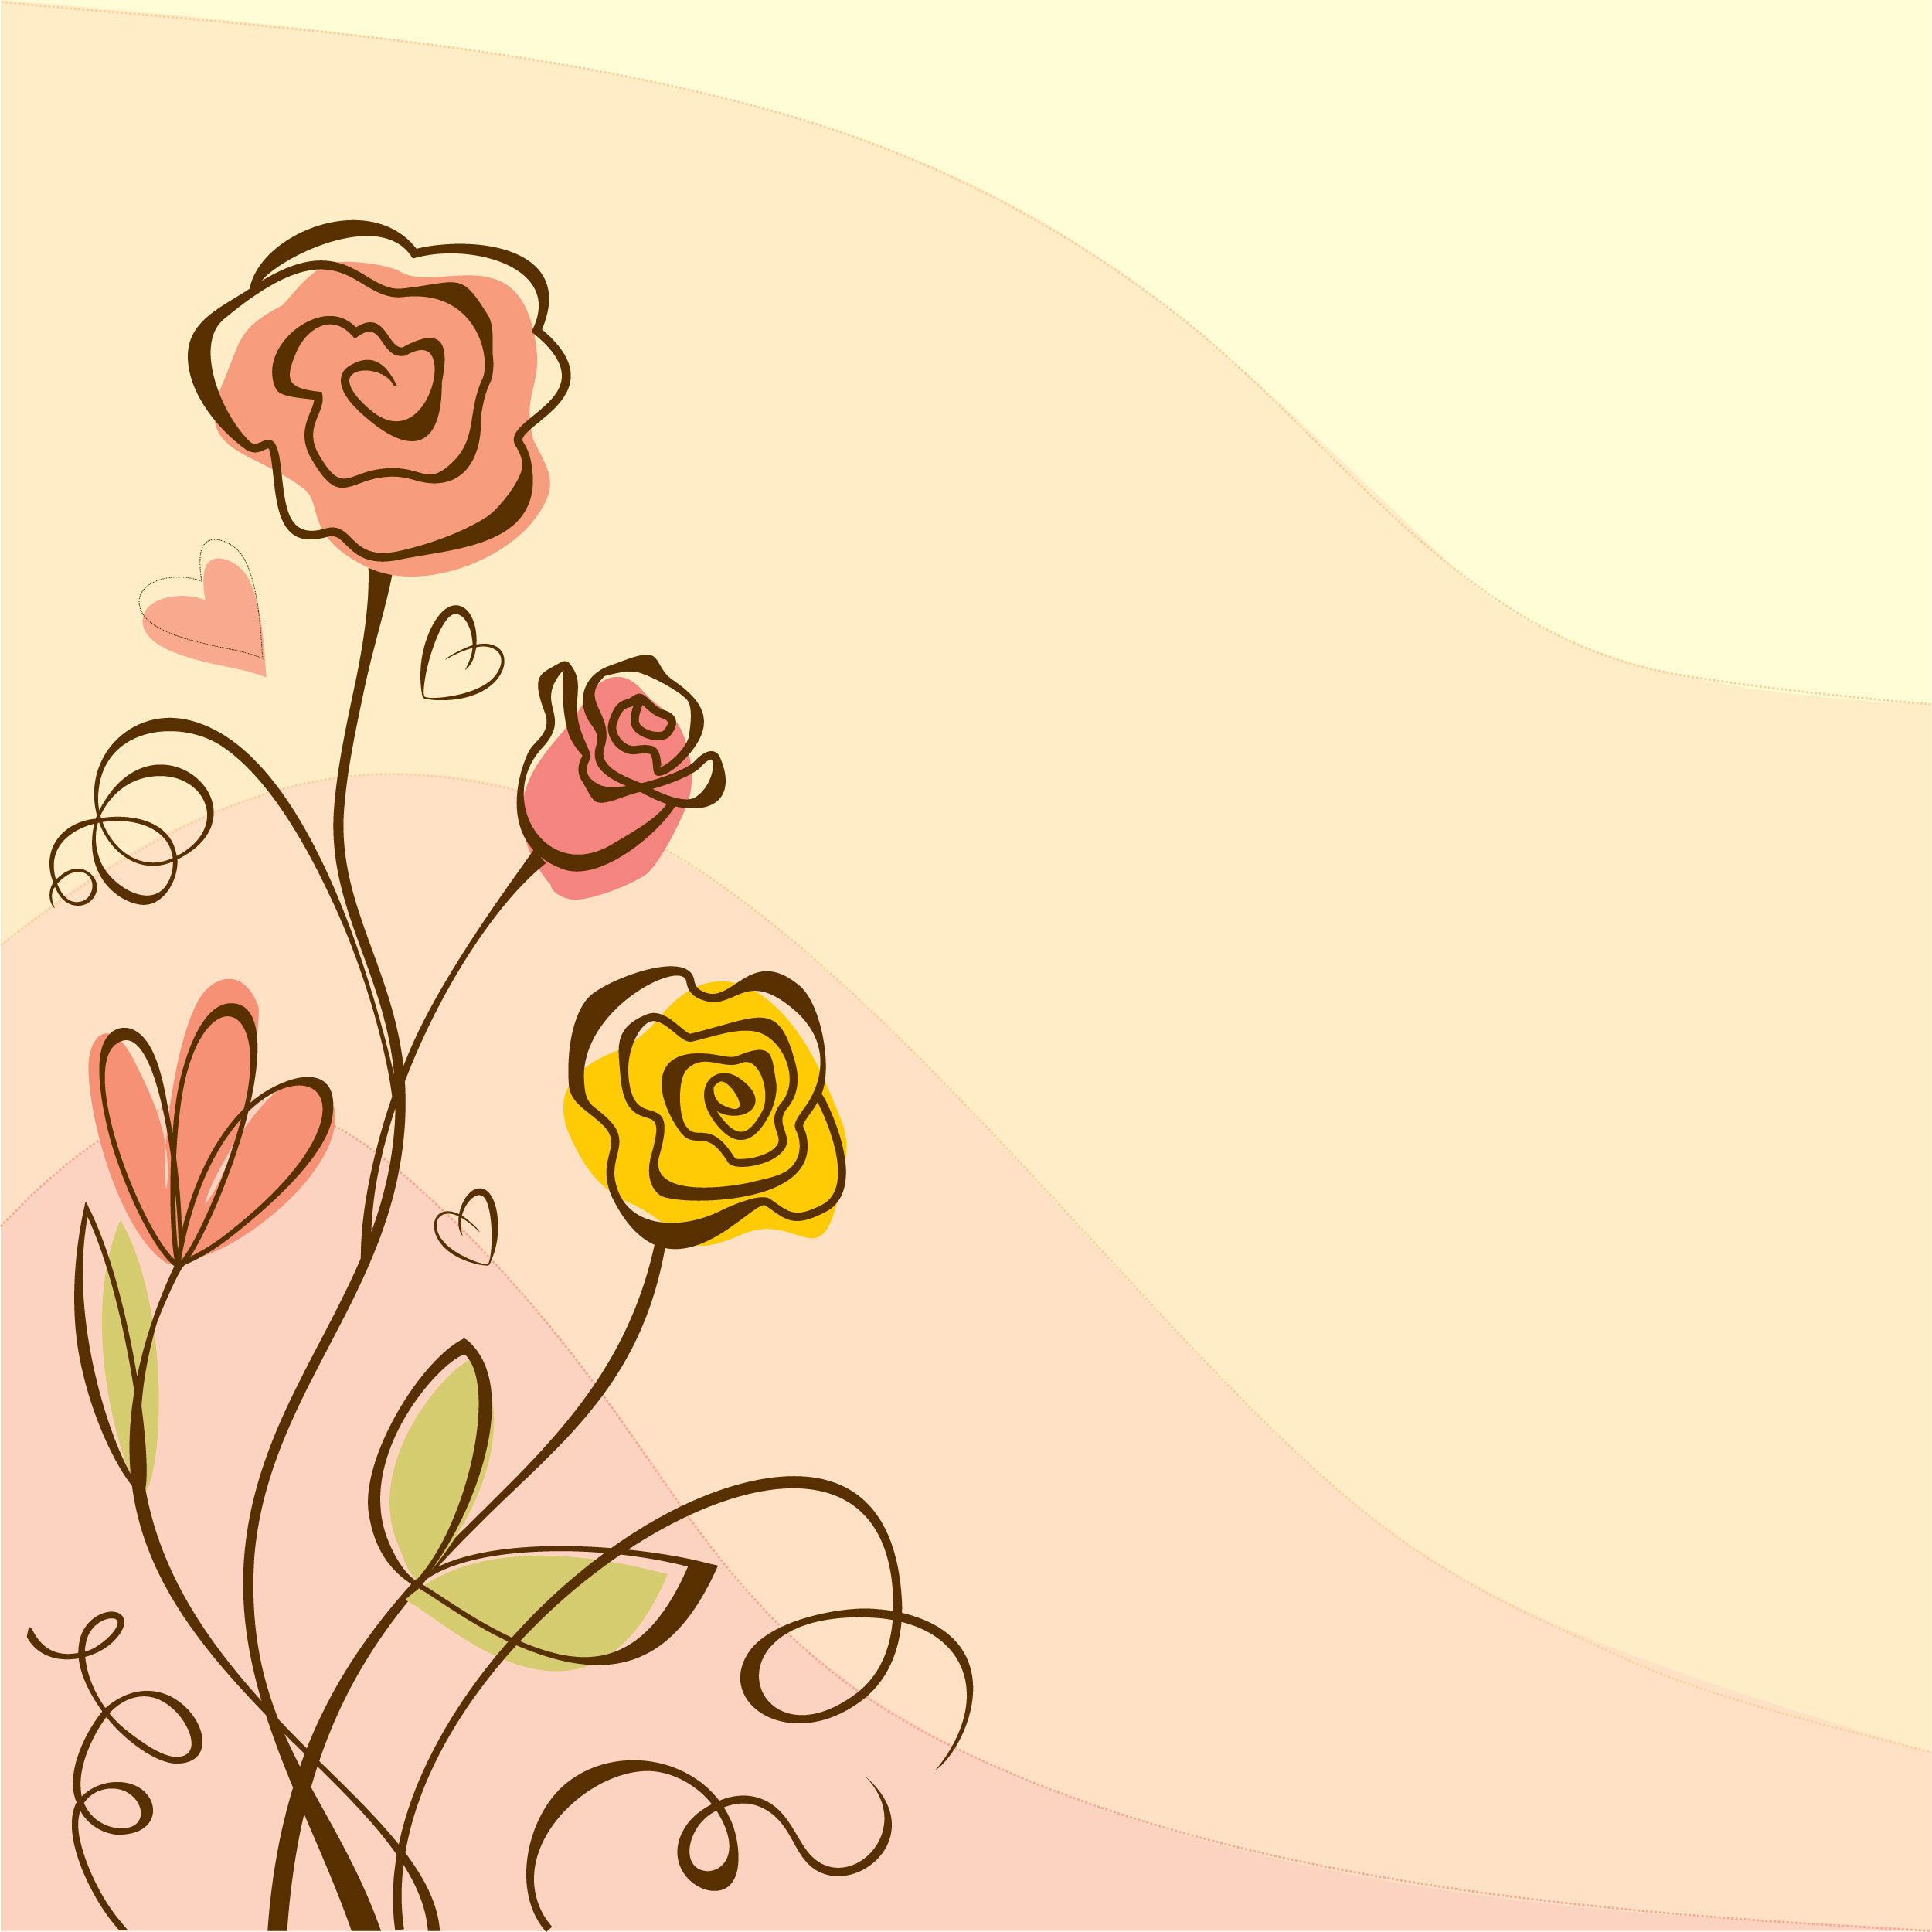 花のイラスト フリー素材 壁紙 背景no 127 手書き風 ポップ 暖色